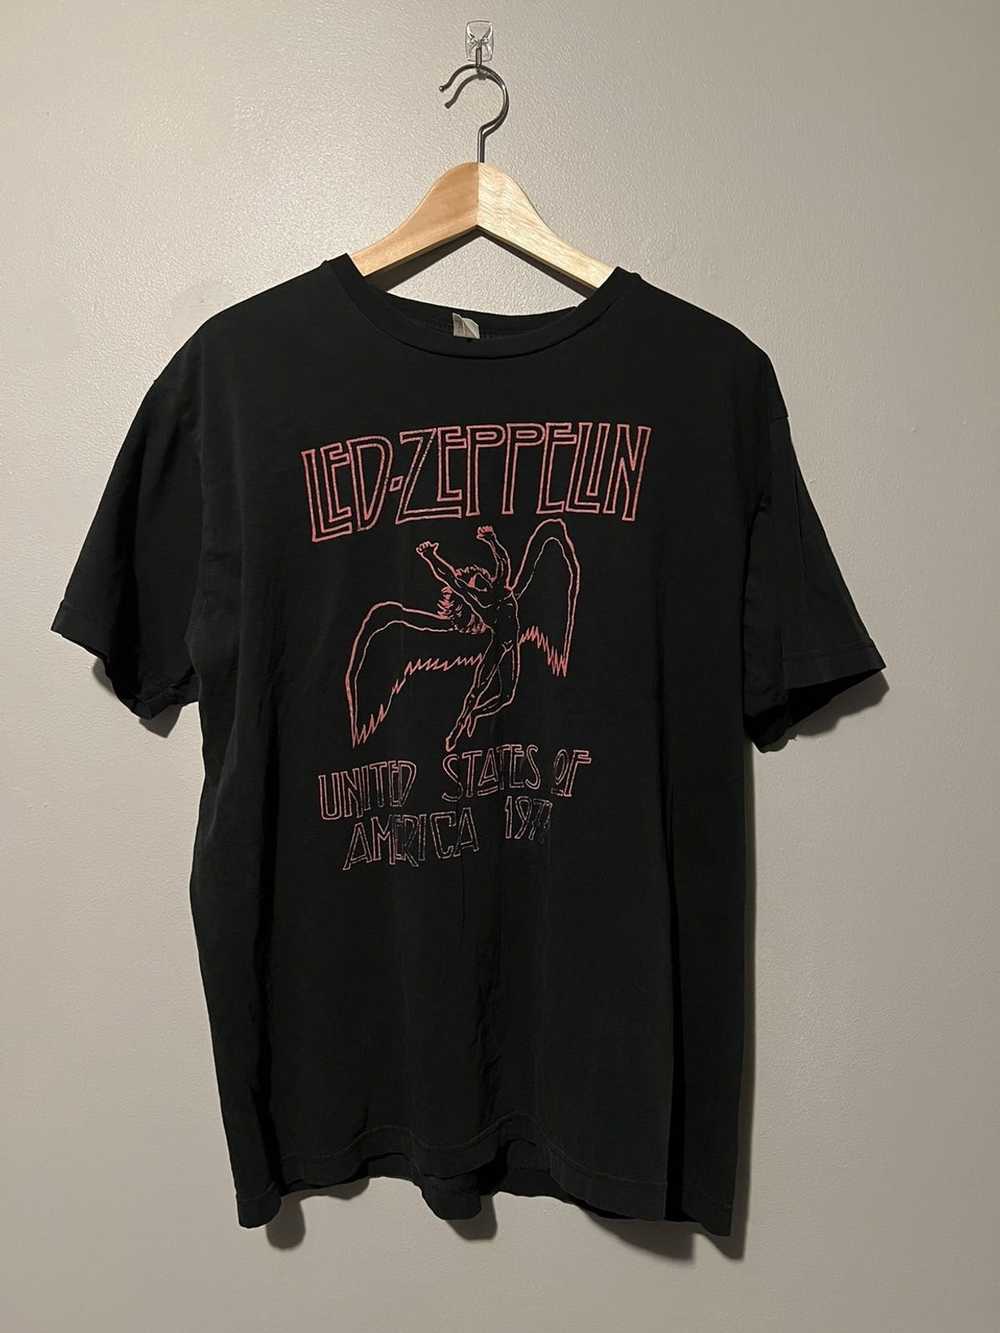 Streetwear 2000s Led Zepplin shirt - image 1